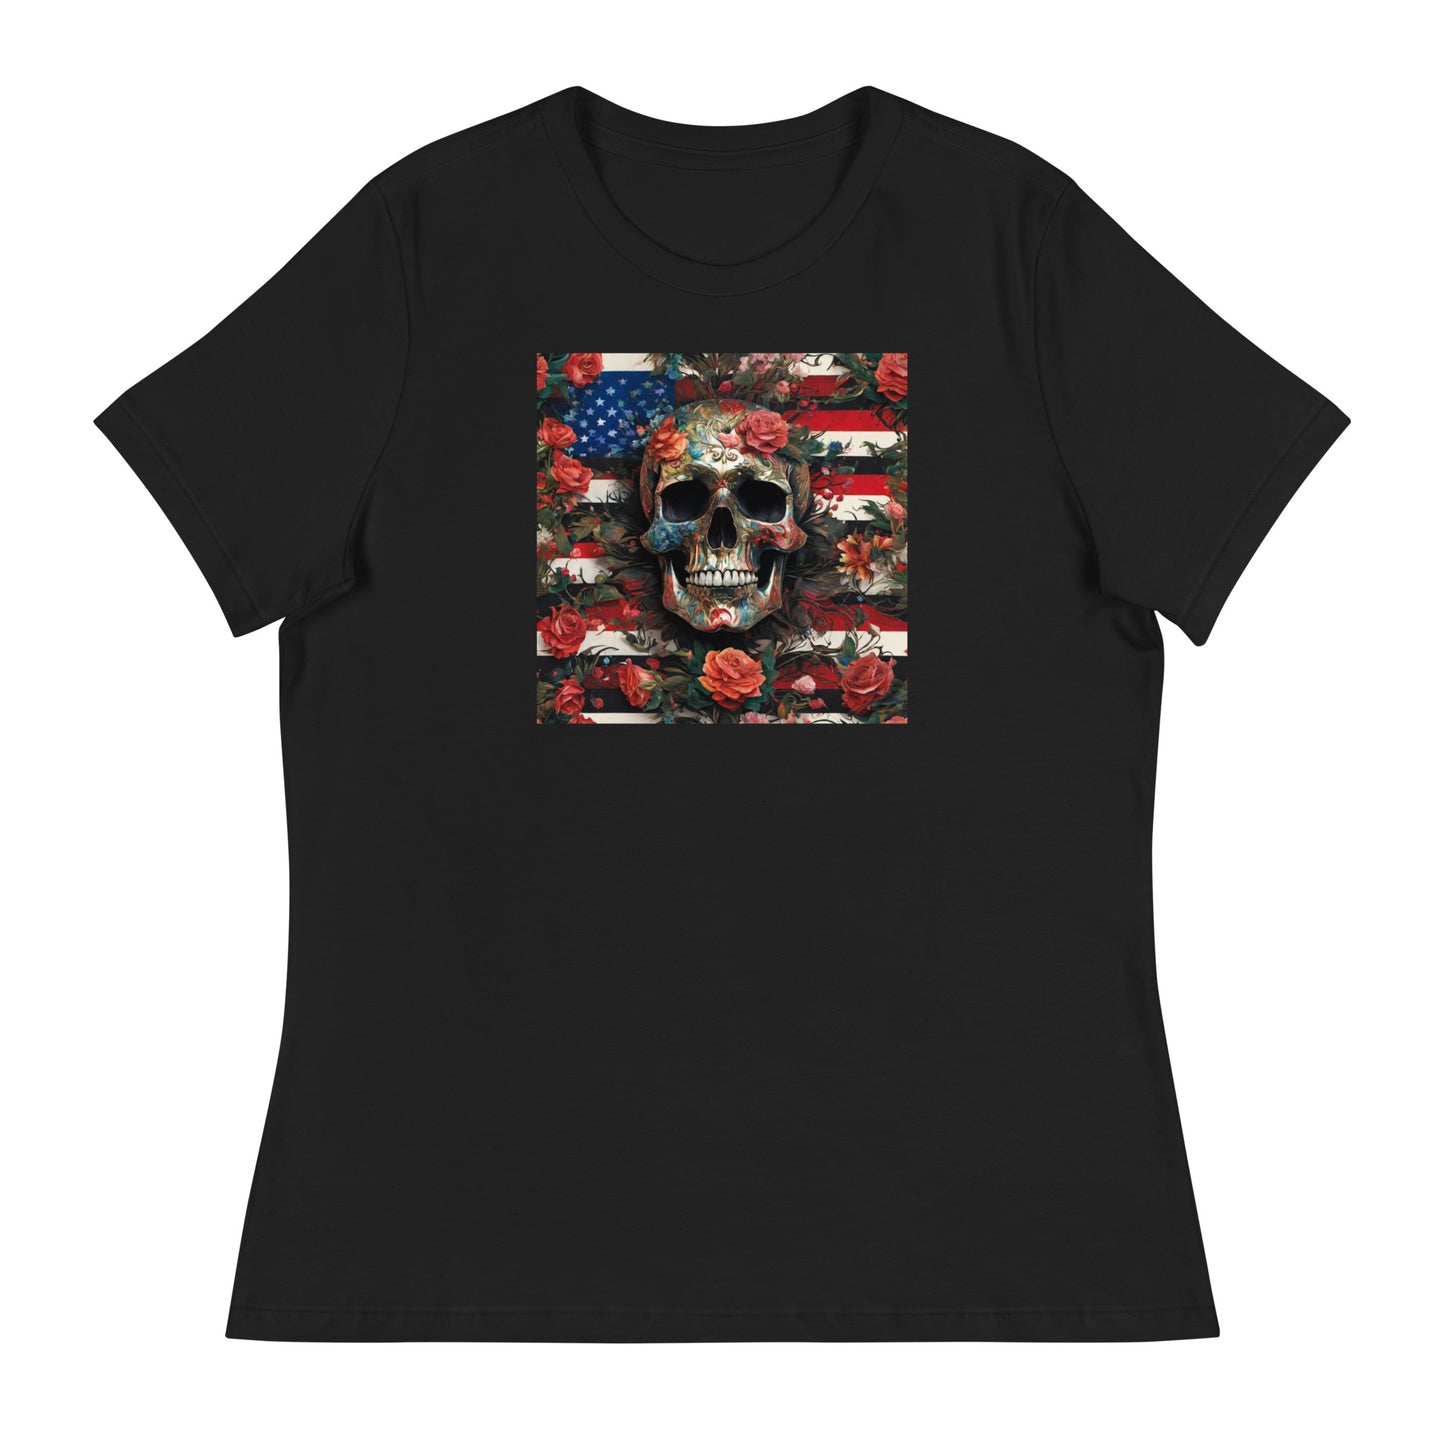 Skull, Roses, and Flag Women's Graphic T-Shirt Black